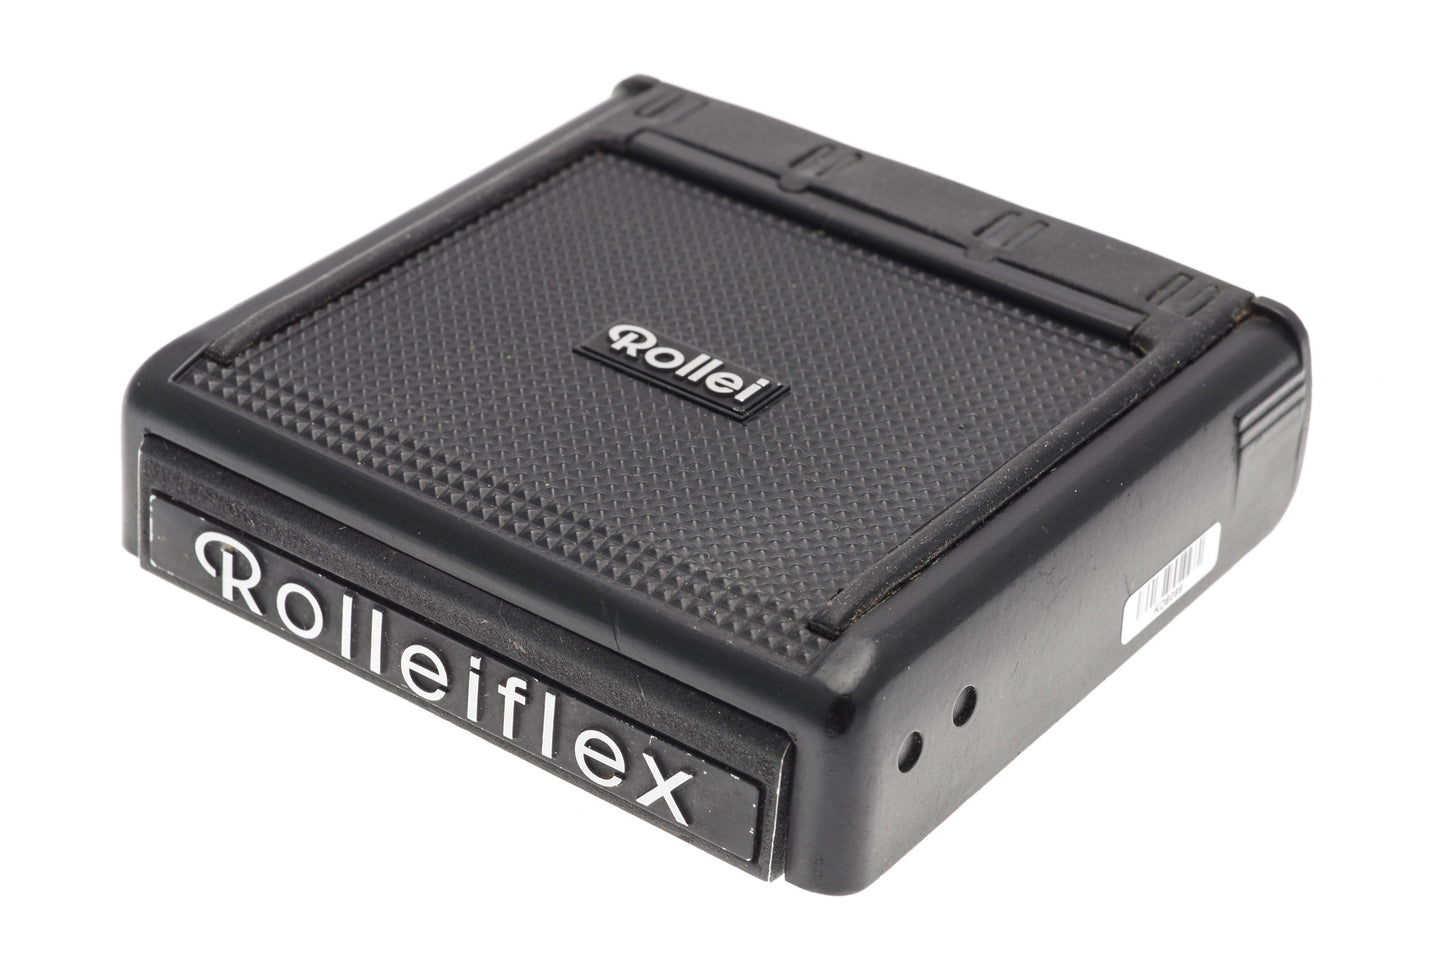 Rollei Rolleiflex Waist Level Finder for 6000 System